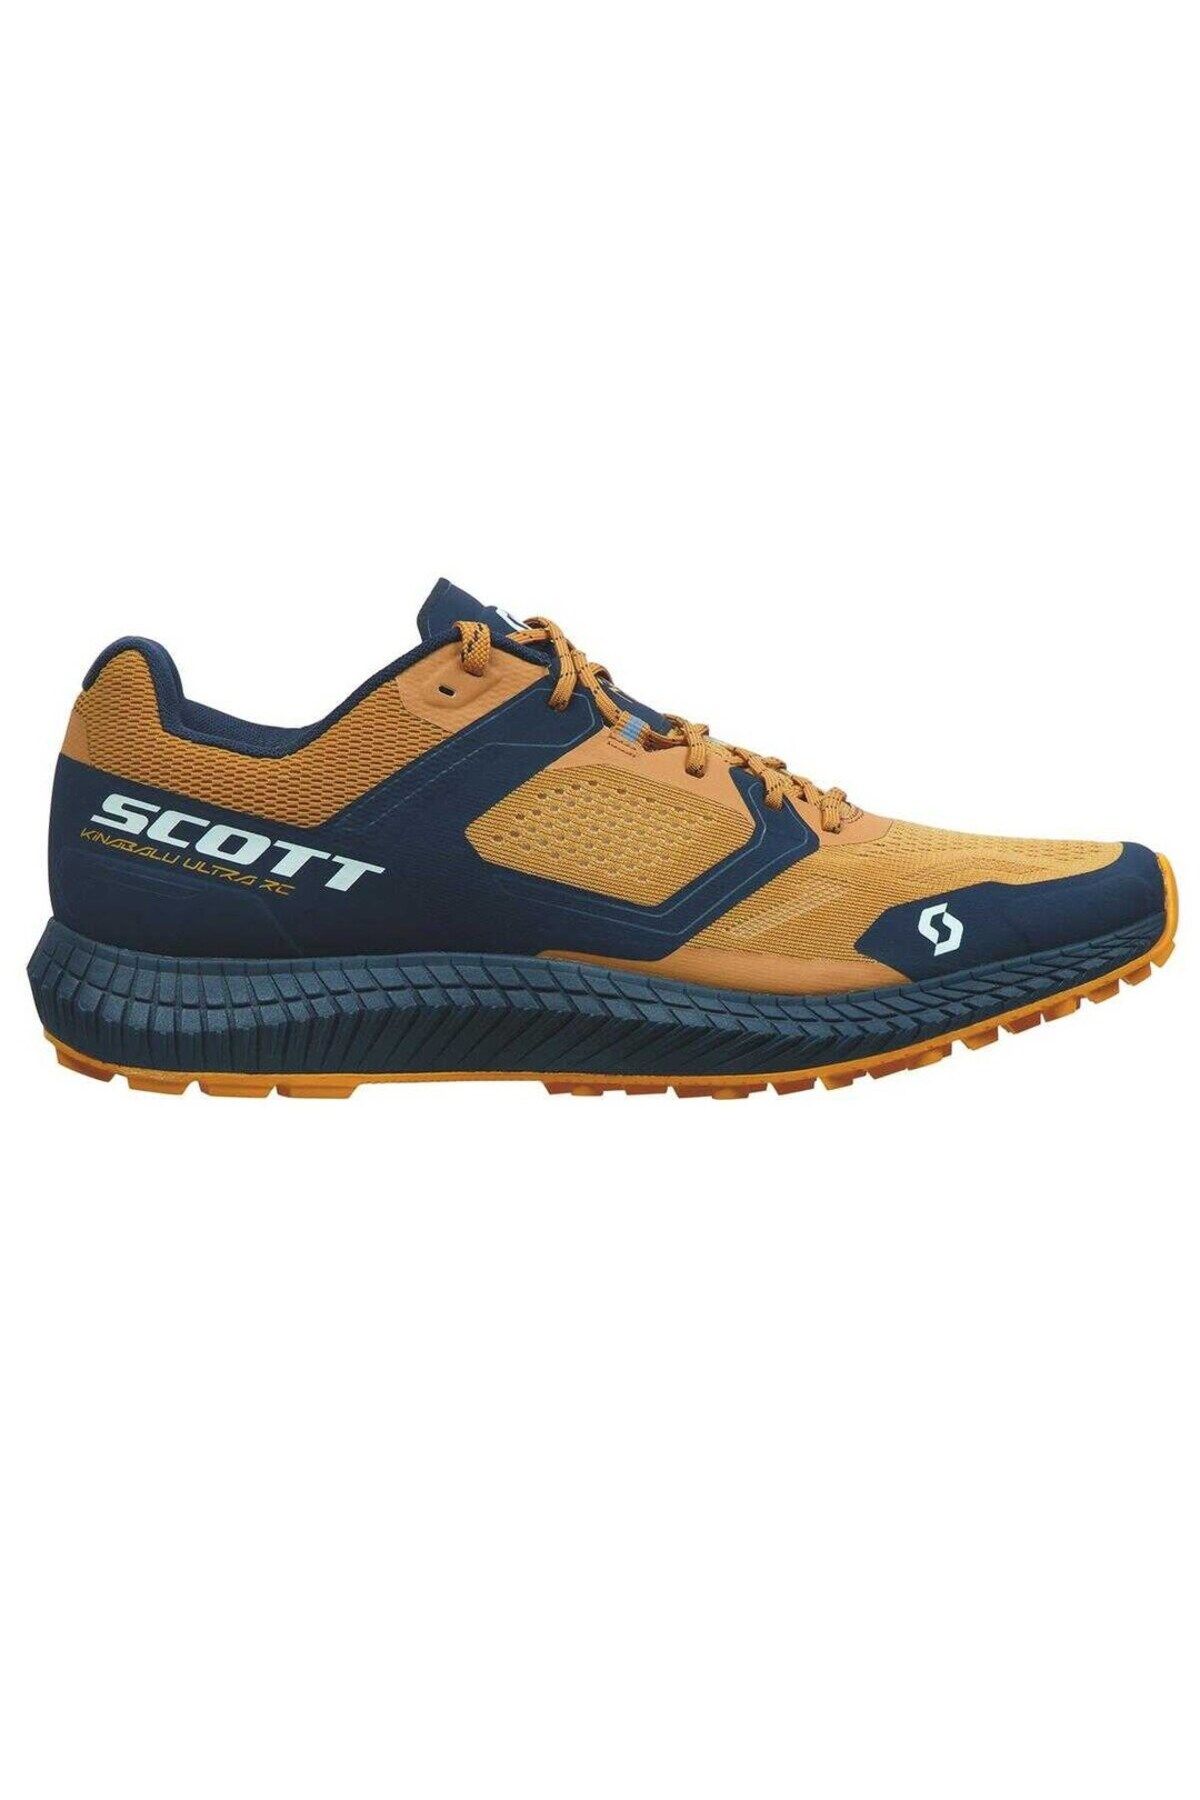 Salomon Scott Kinabalu Ultra RC Erkek Outdoor Patika Koşu Ayakkabısı Turuncu 279761